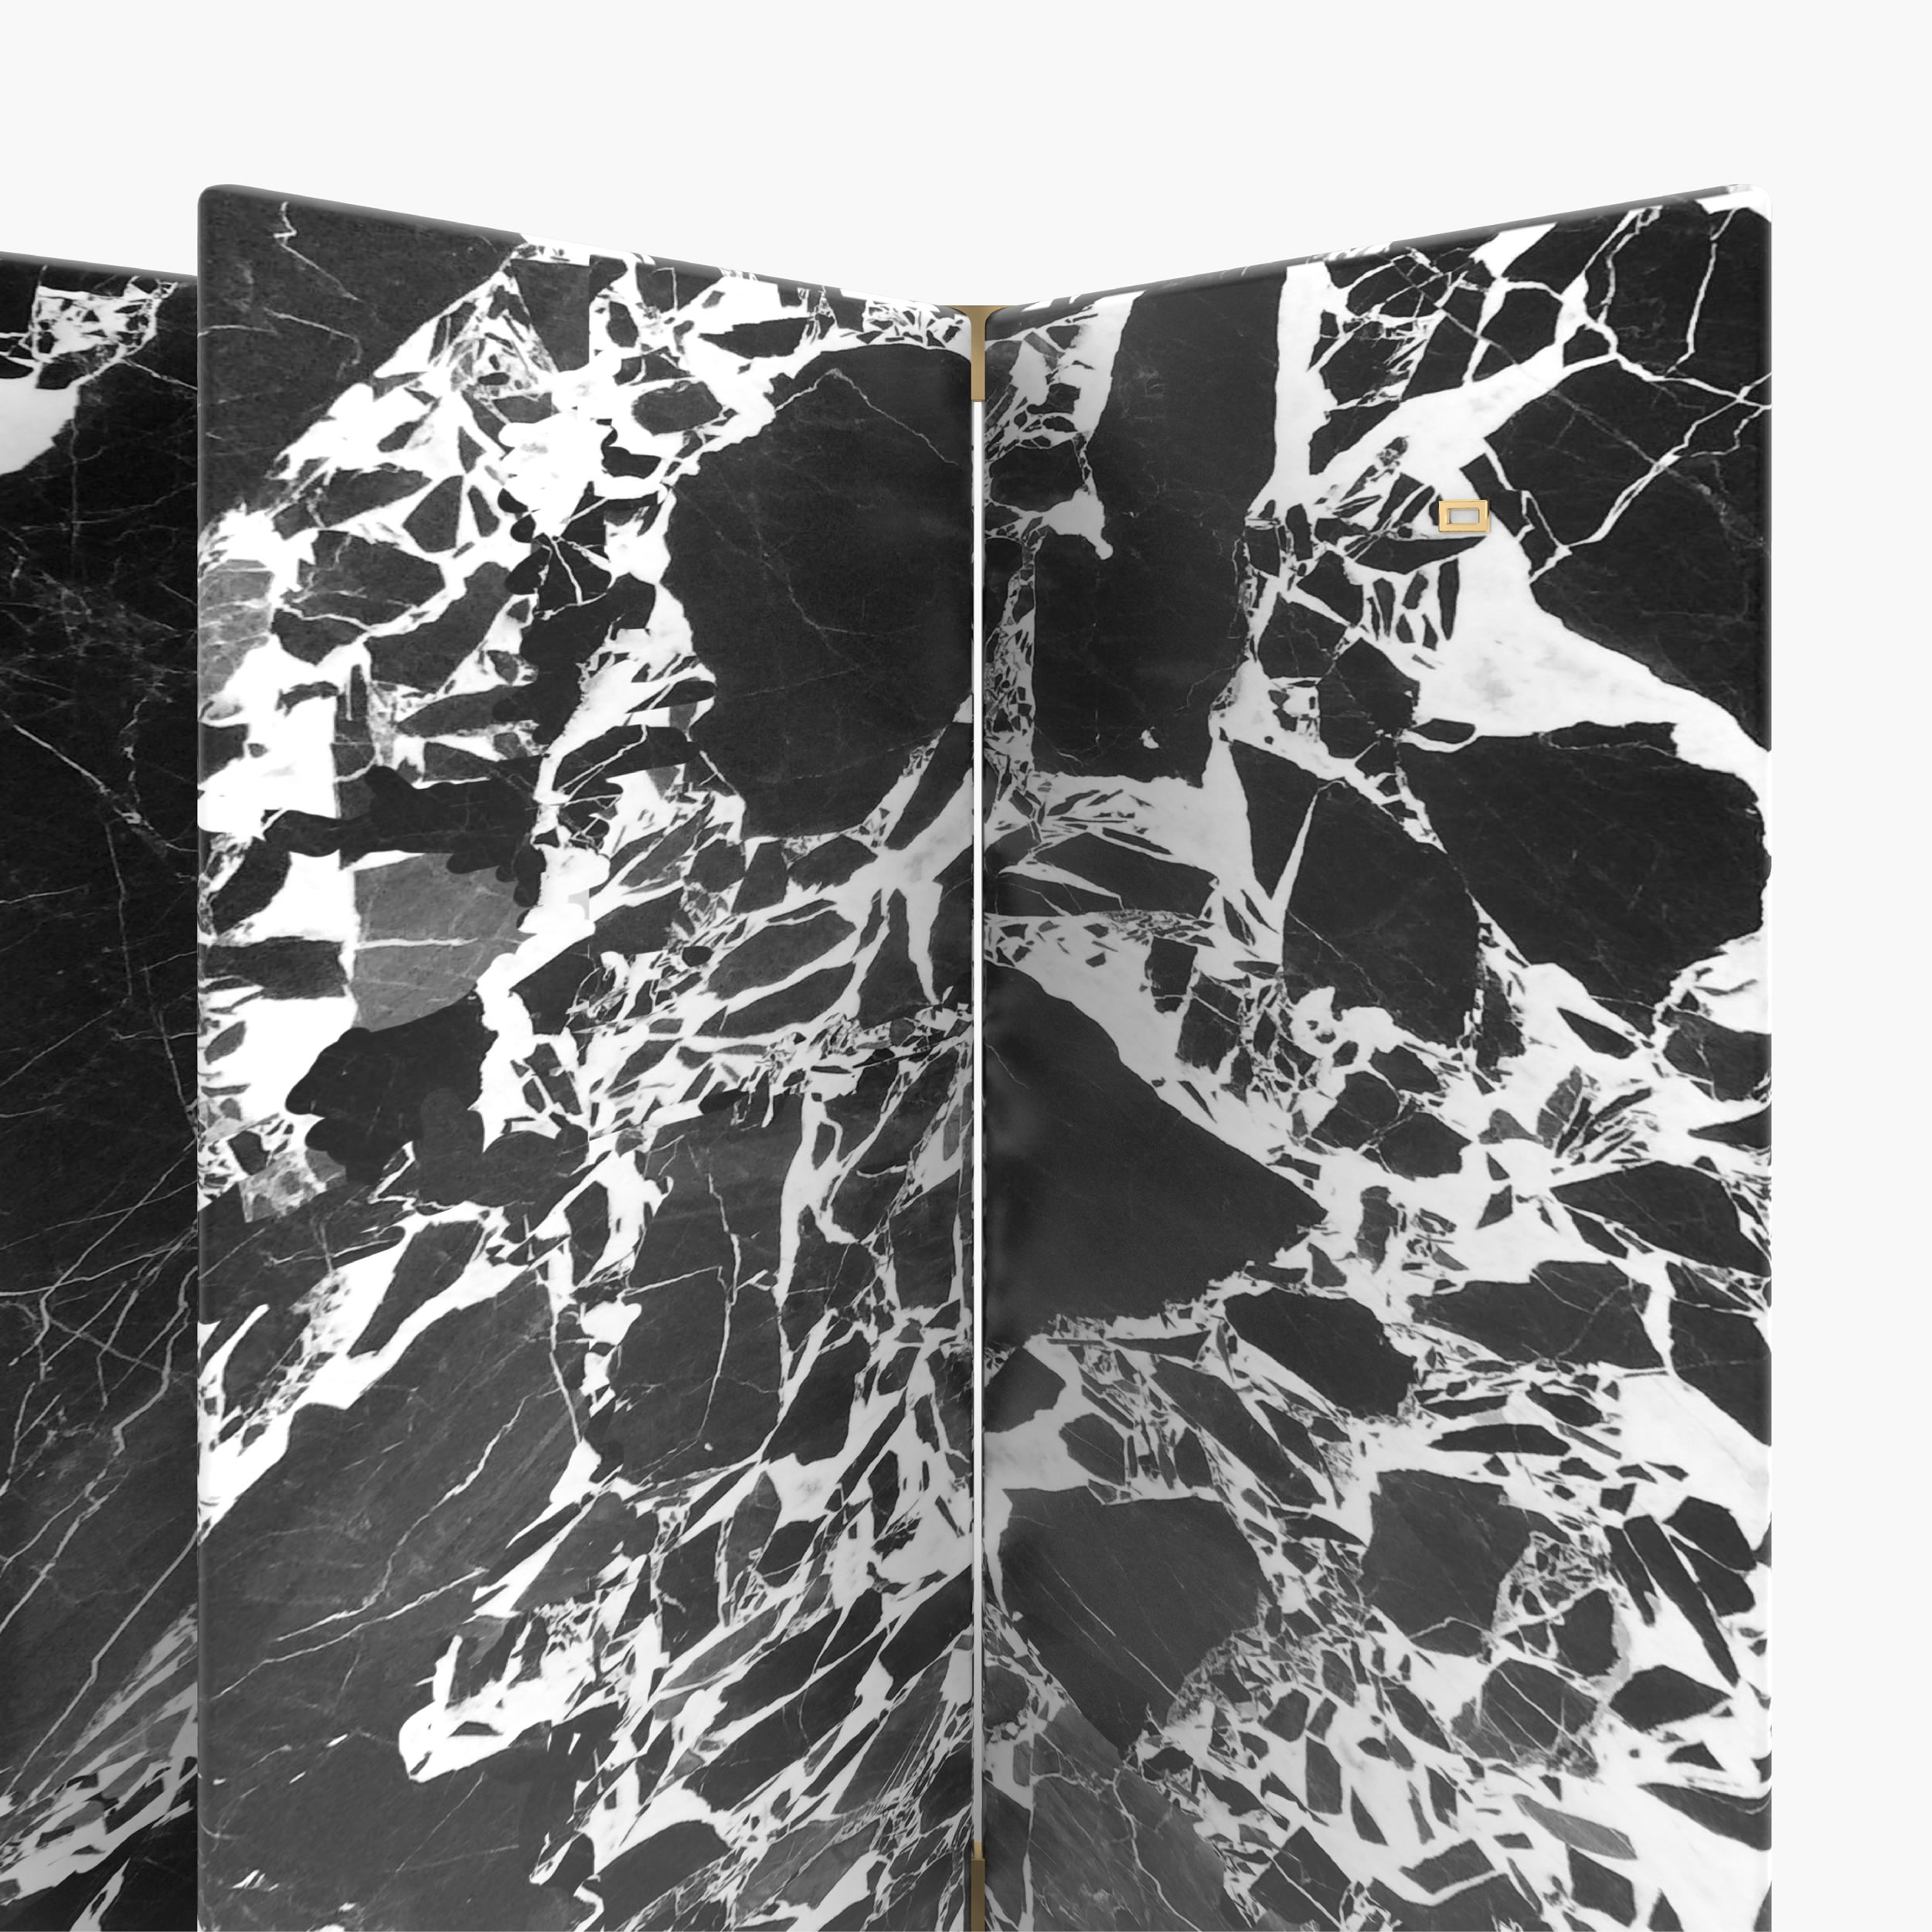 Sideboard Prismen Weiss Grand Antique Marmor einzigartig geformt Wohnzimmer Innenarchitektur Sideboards FS 6 FELIX SCHWAKE